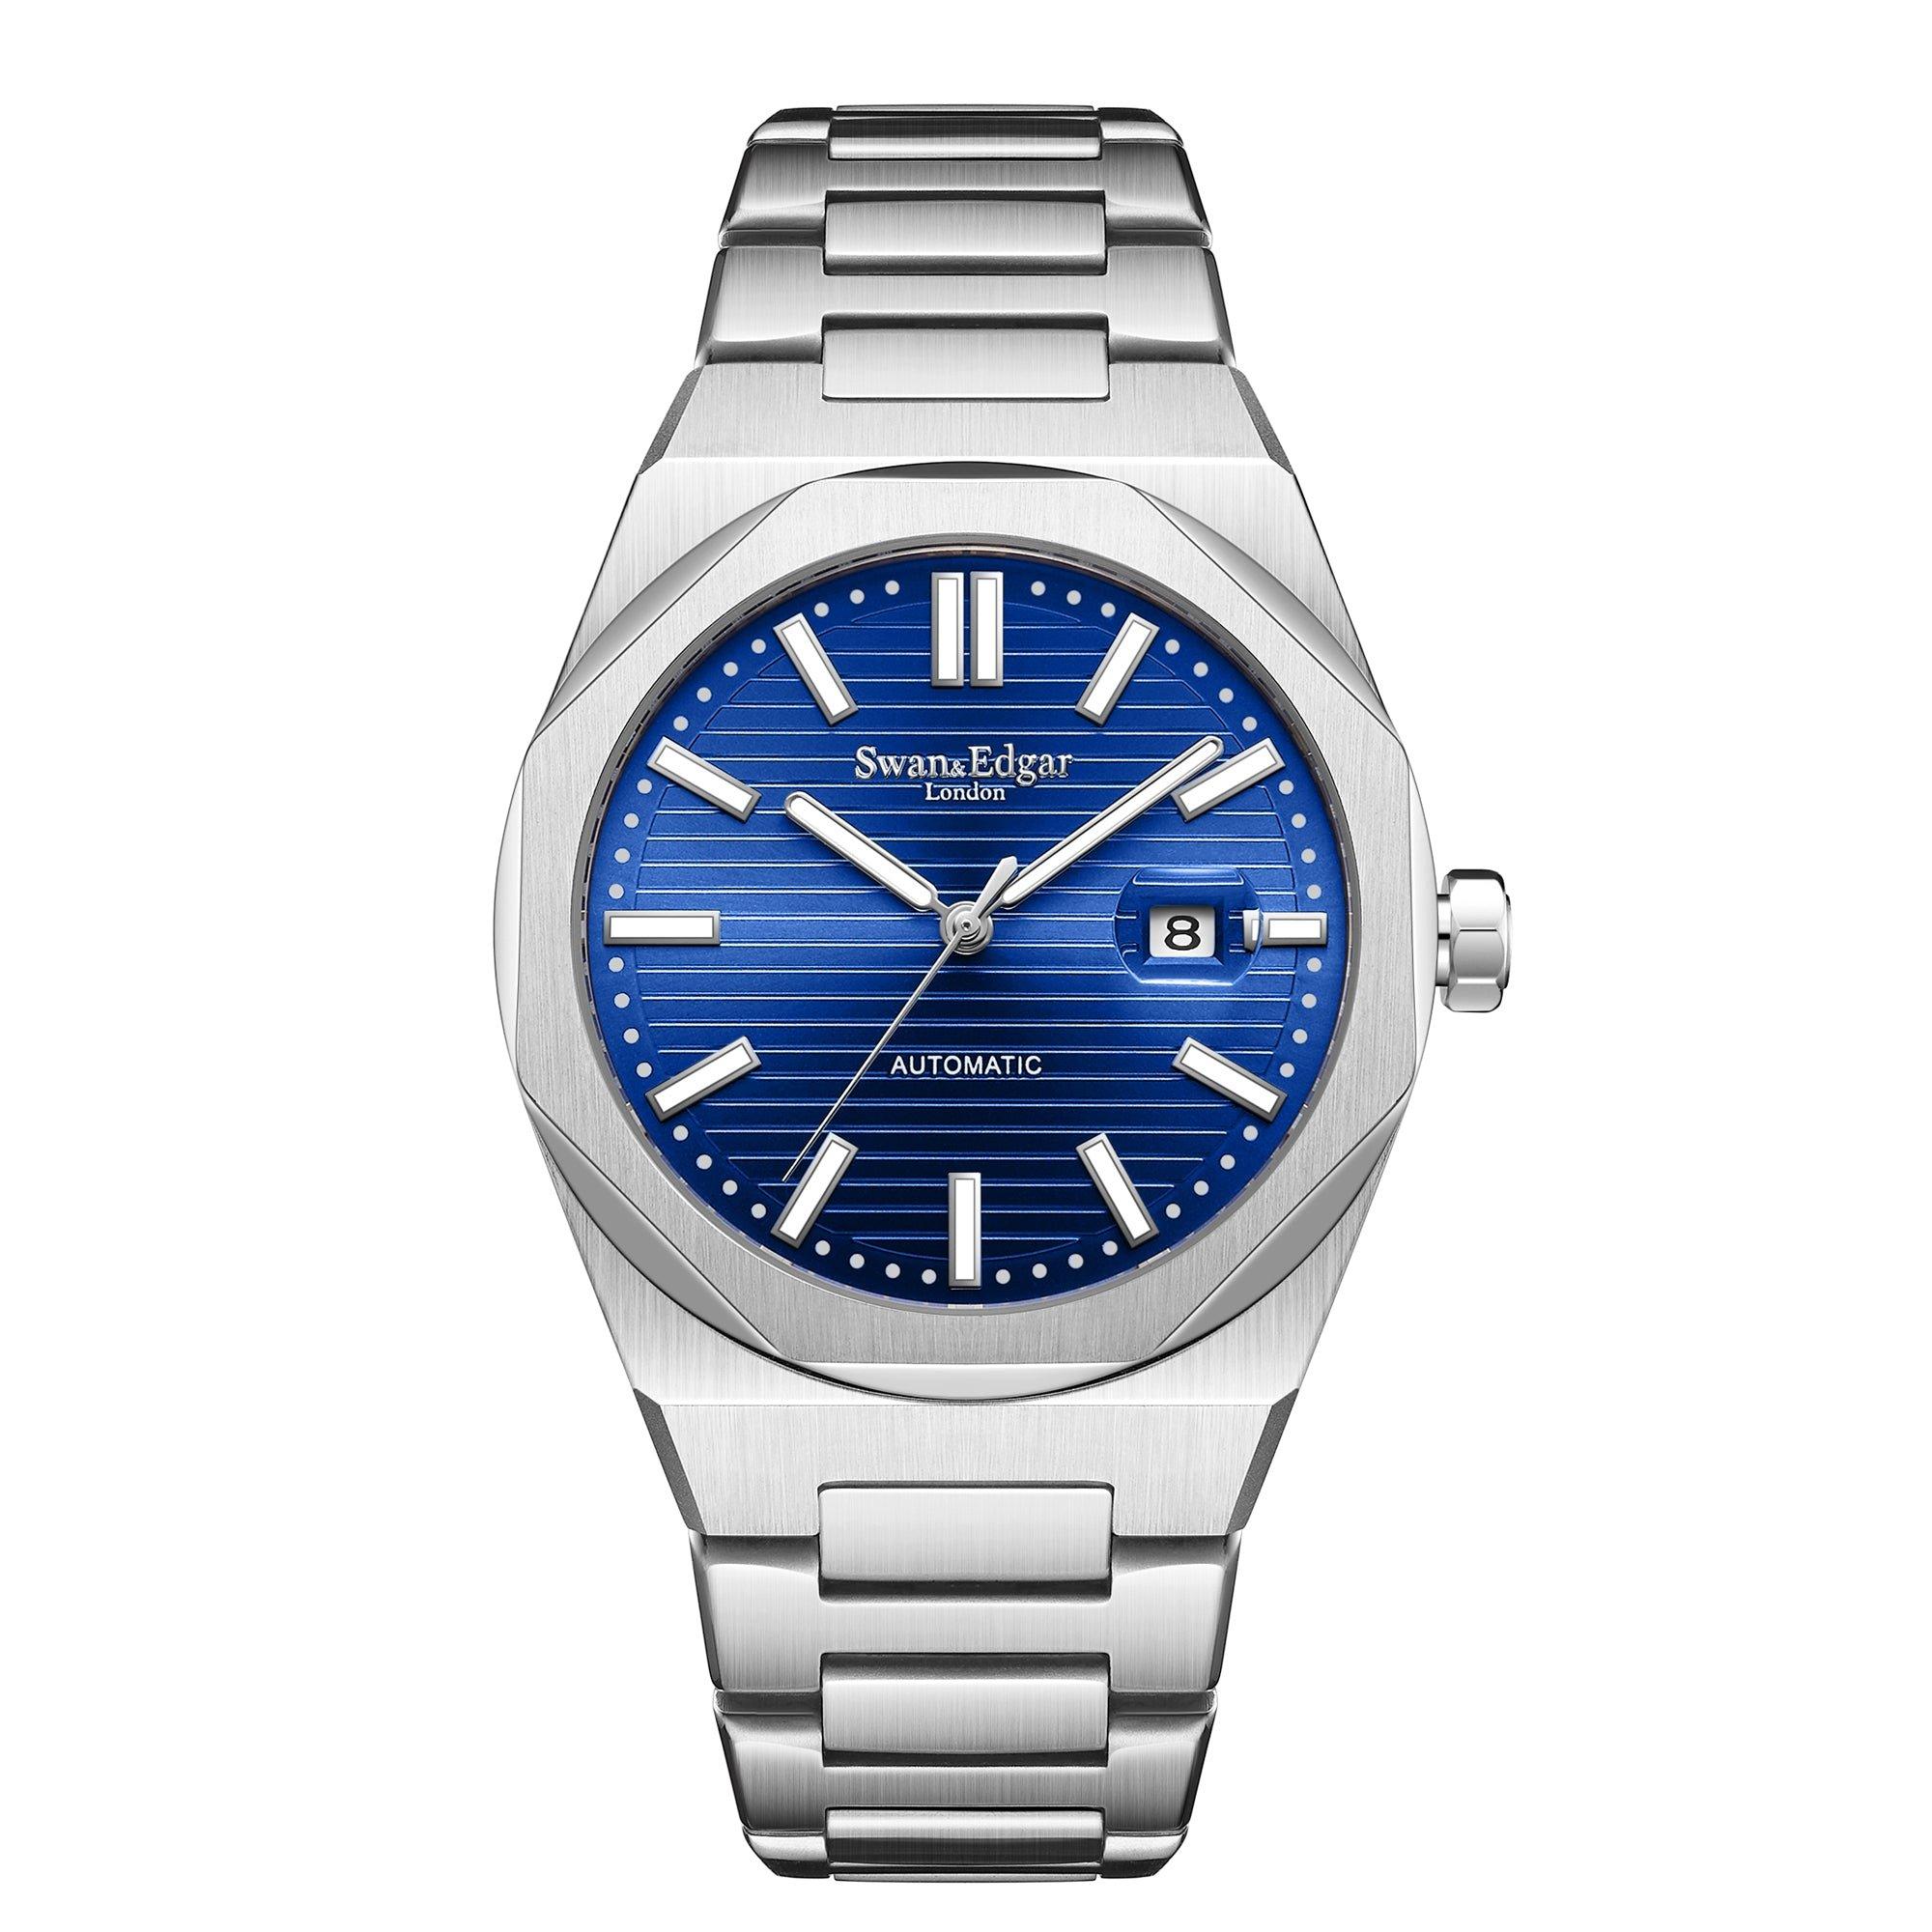 цена Автоматические часы Sovereine ручной сборки Swan & Edgar ограниченной серии, синий